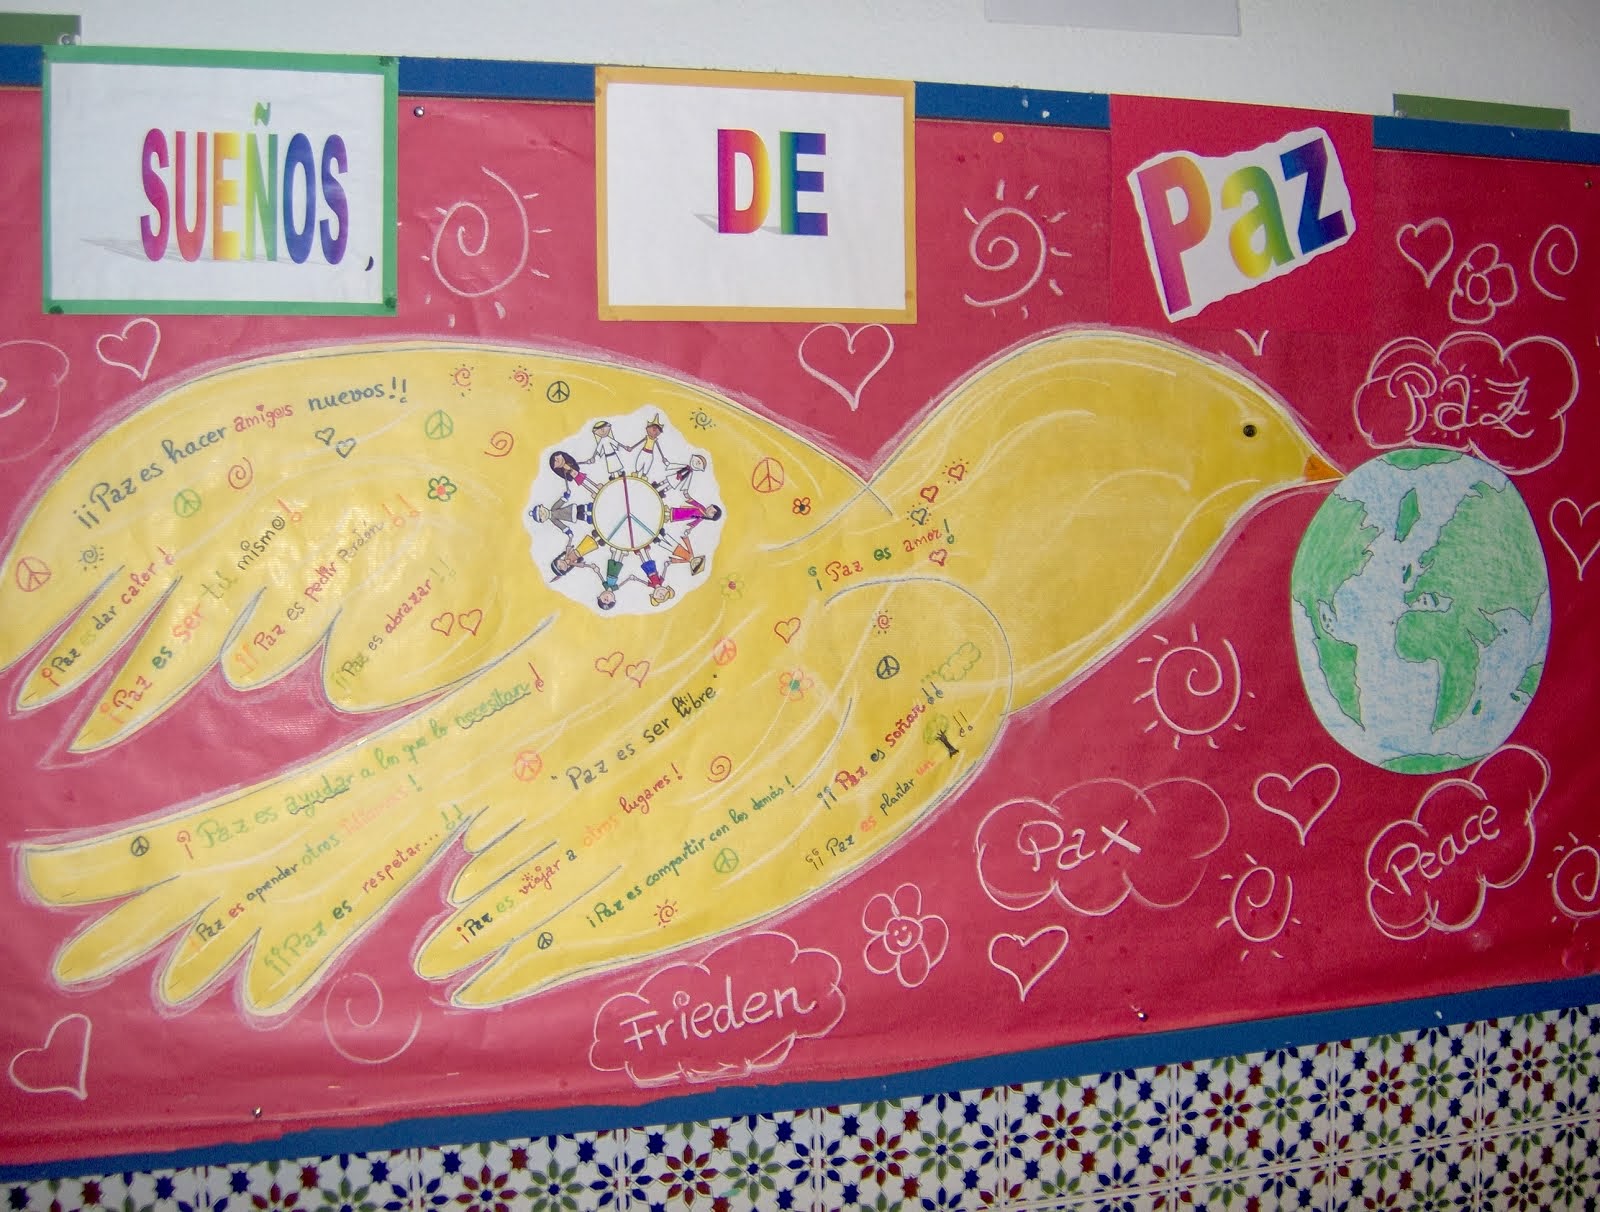 Mural sueños de Paz